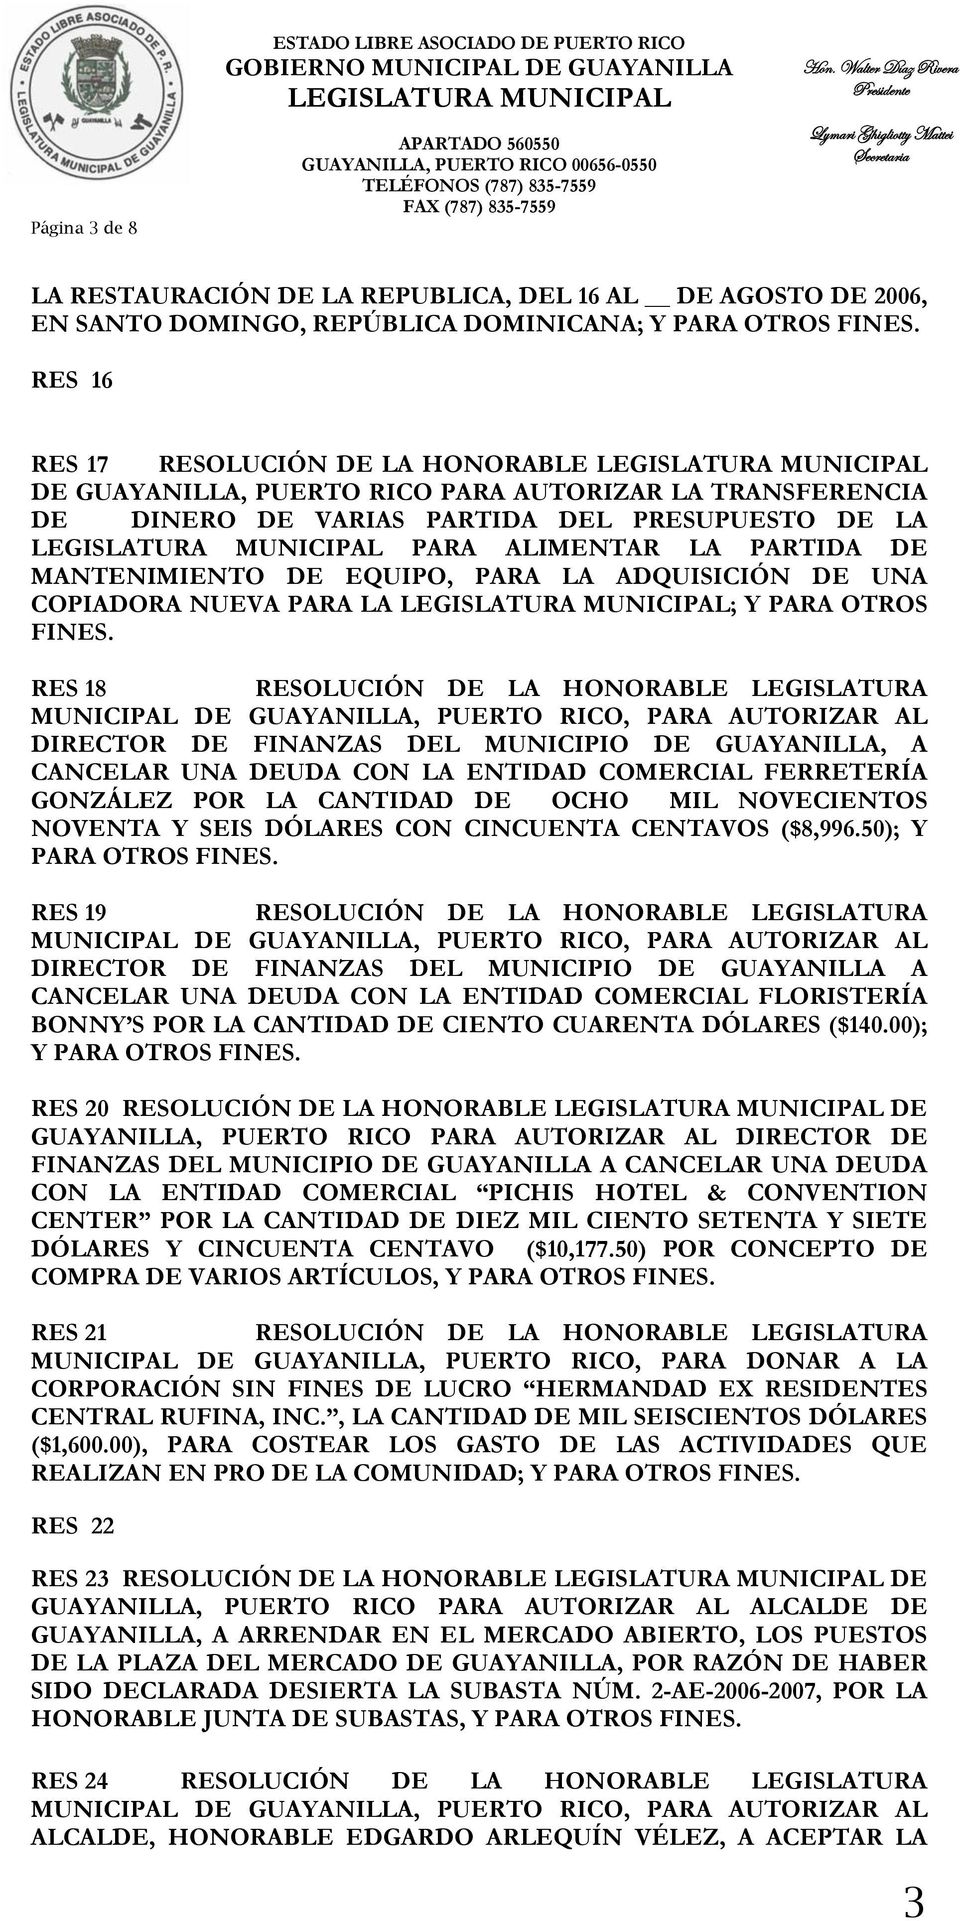 RES 18 RESOLUCIÓN DE LA HONORABLE LEGISLATURA DIRECTOR DE FINANZAS DEL MUNICIPIO DE GUAYANILLA, A CANCELAR UNA DEUDA CON LA ENTIDAD COMERCIAL FERRETERÍA GONZÁLEZ POR LA CANTIDAD DE OCHO MIL